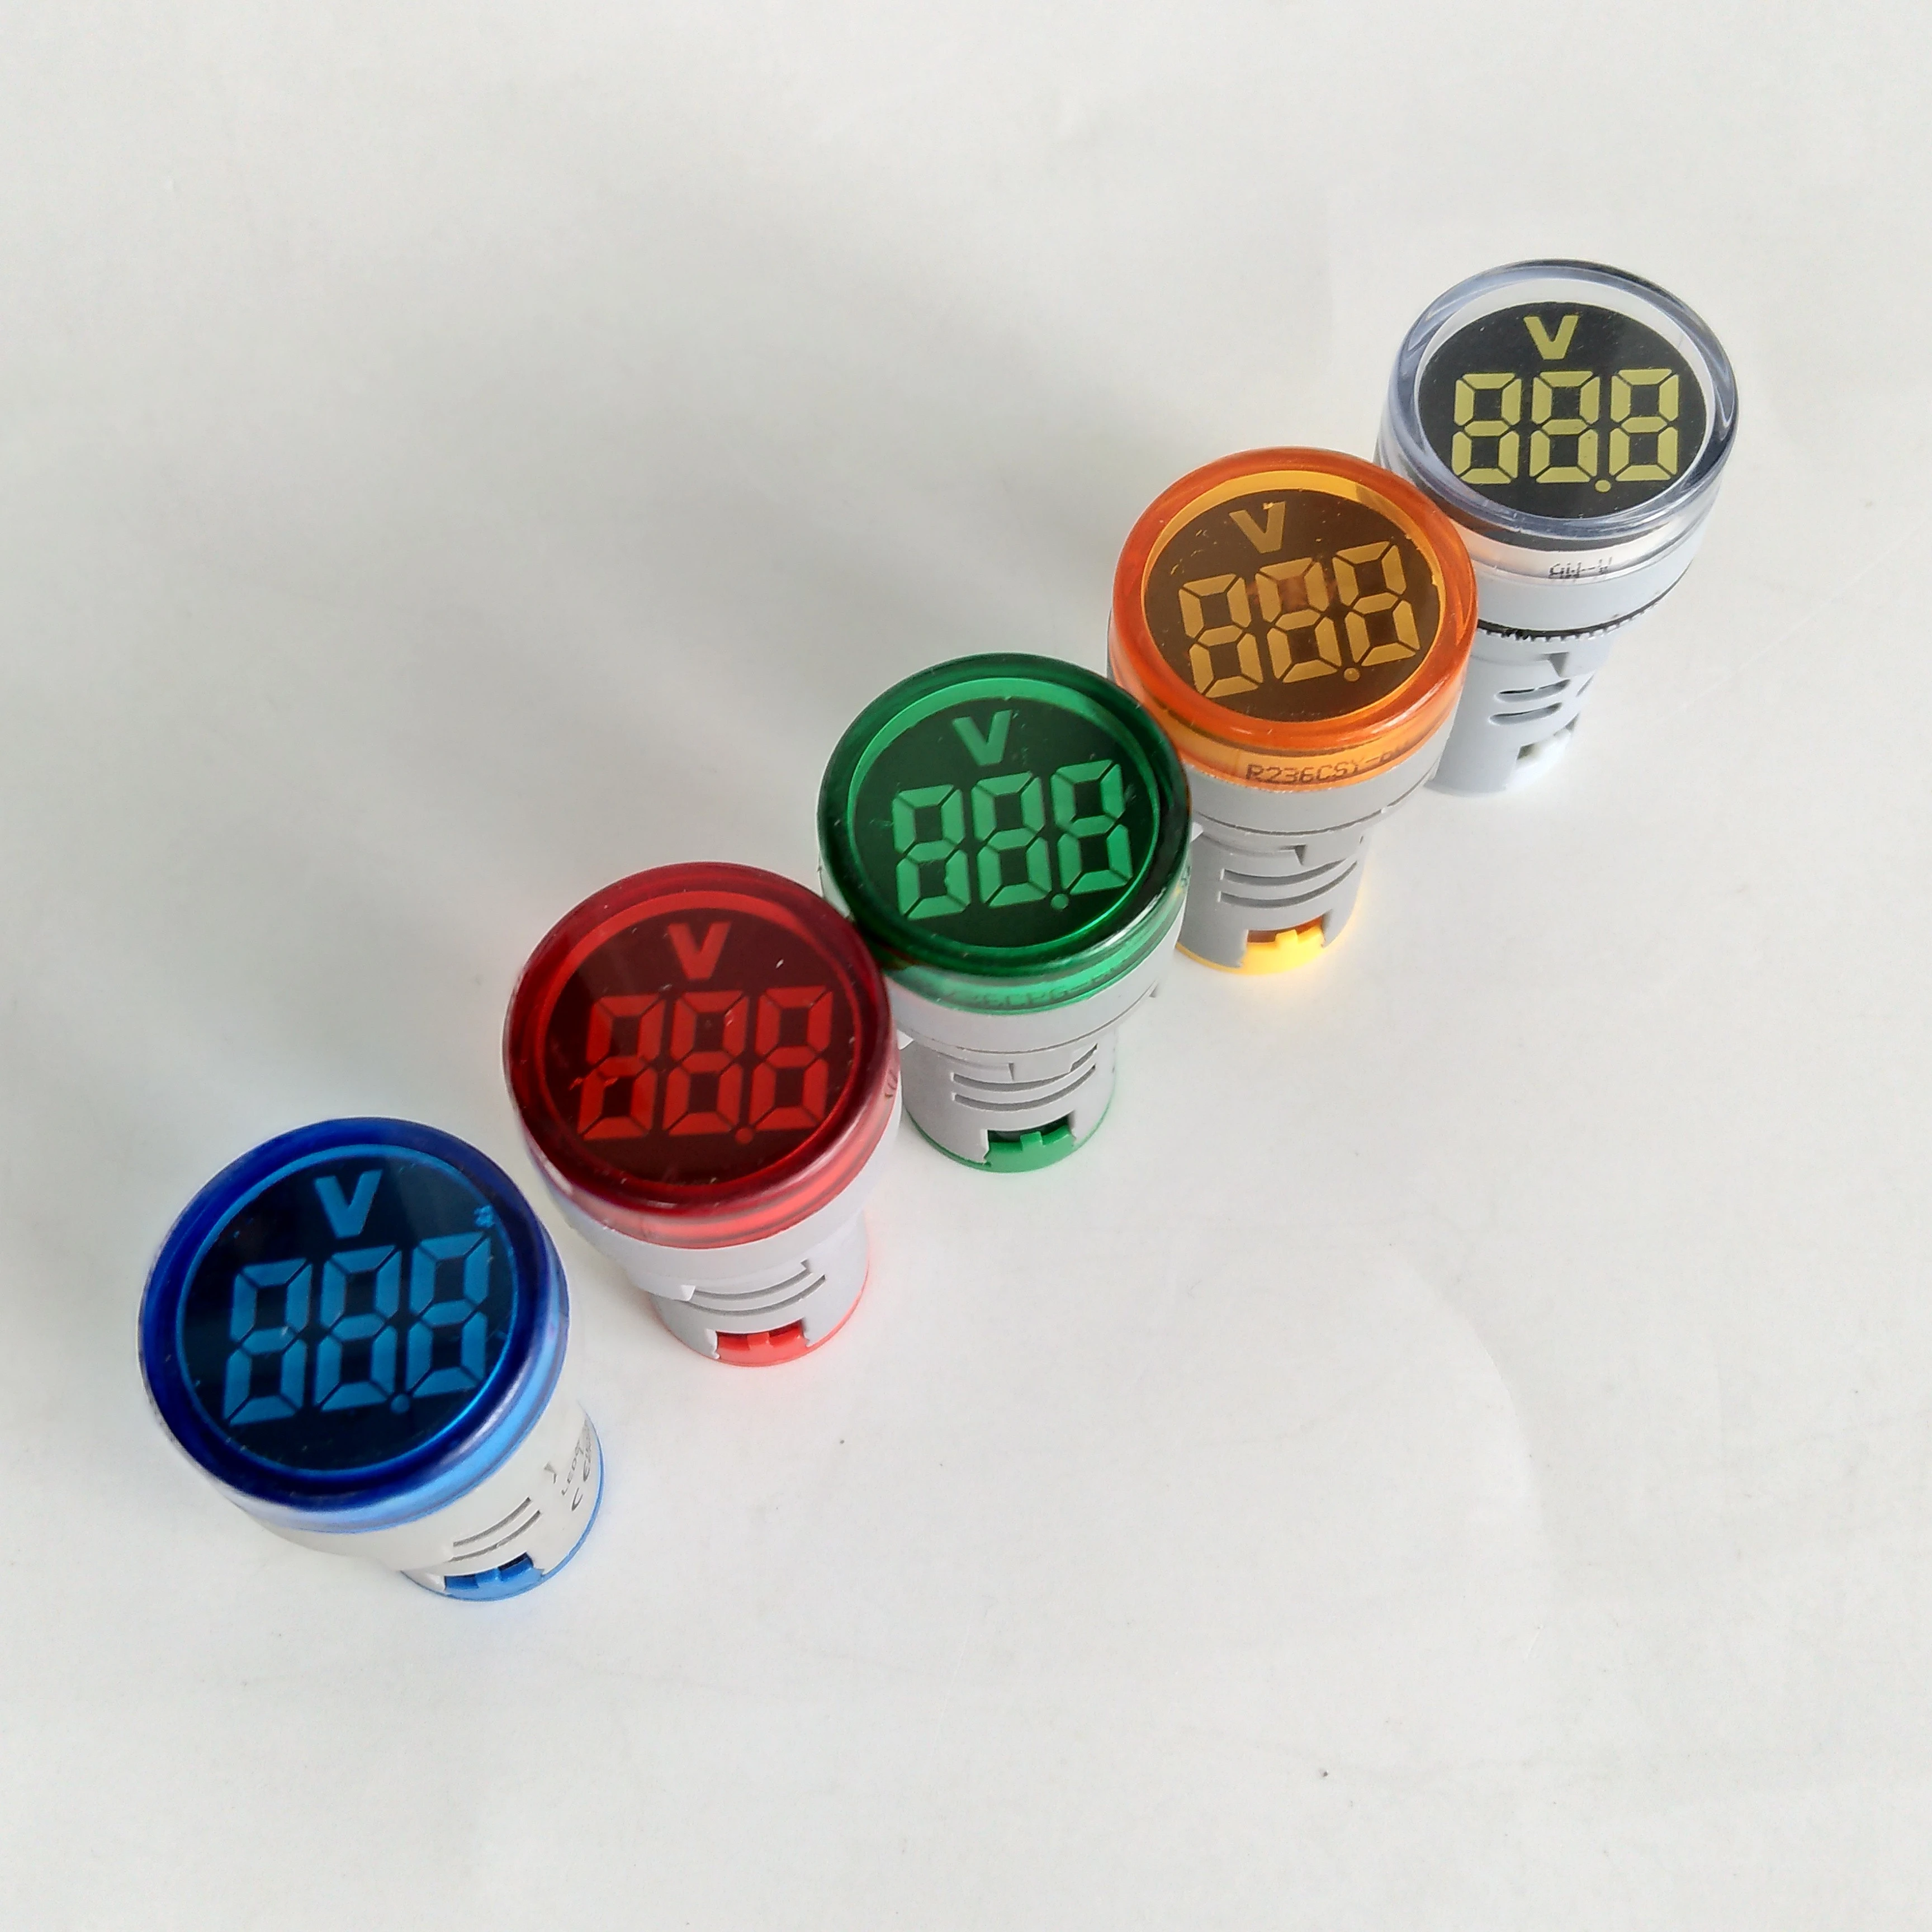 New Generation 22mm Big LED Highbright Red Greeen Amber Blue White AC 110V 230V Voltmeter Indicator Light Voltage Meter